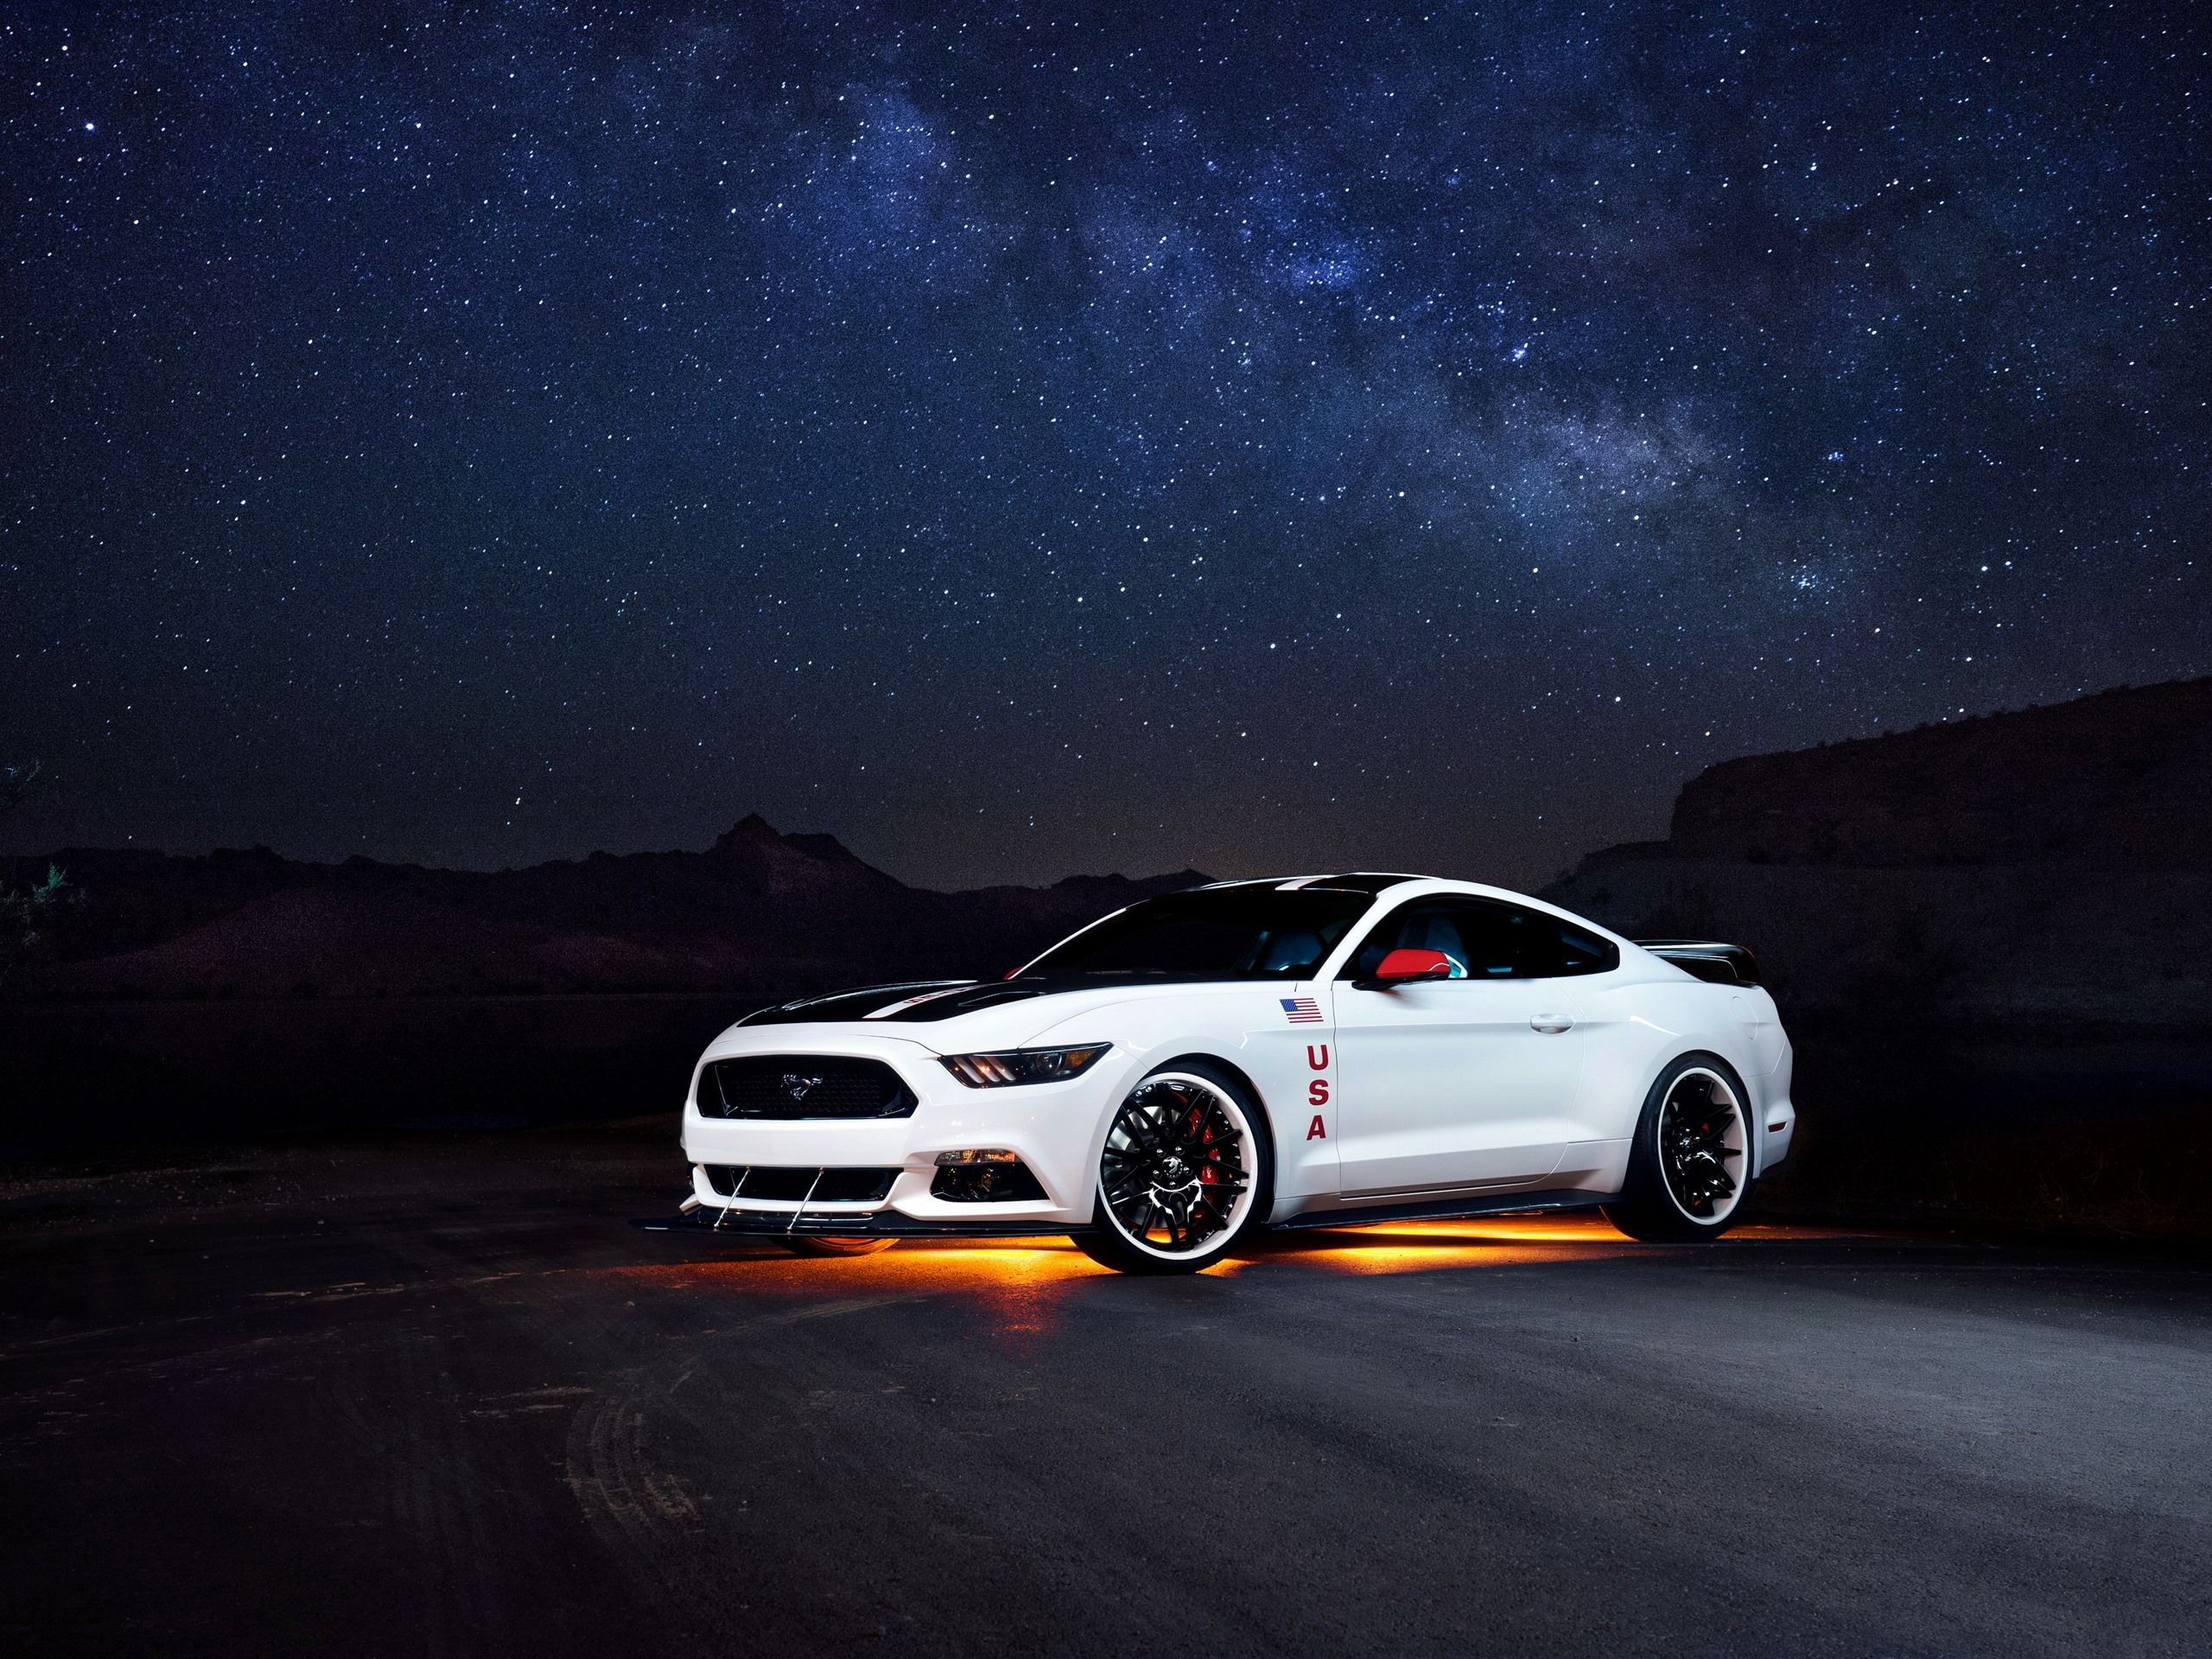  Ford Hintergrundbild 2560x1920. Ford Mustang weiße Autoseitenansicht, Nacht, sternenklar 3840x2160 UHD 4K Hintergrundbilder, HD, Bild